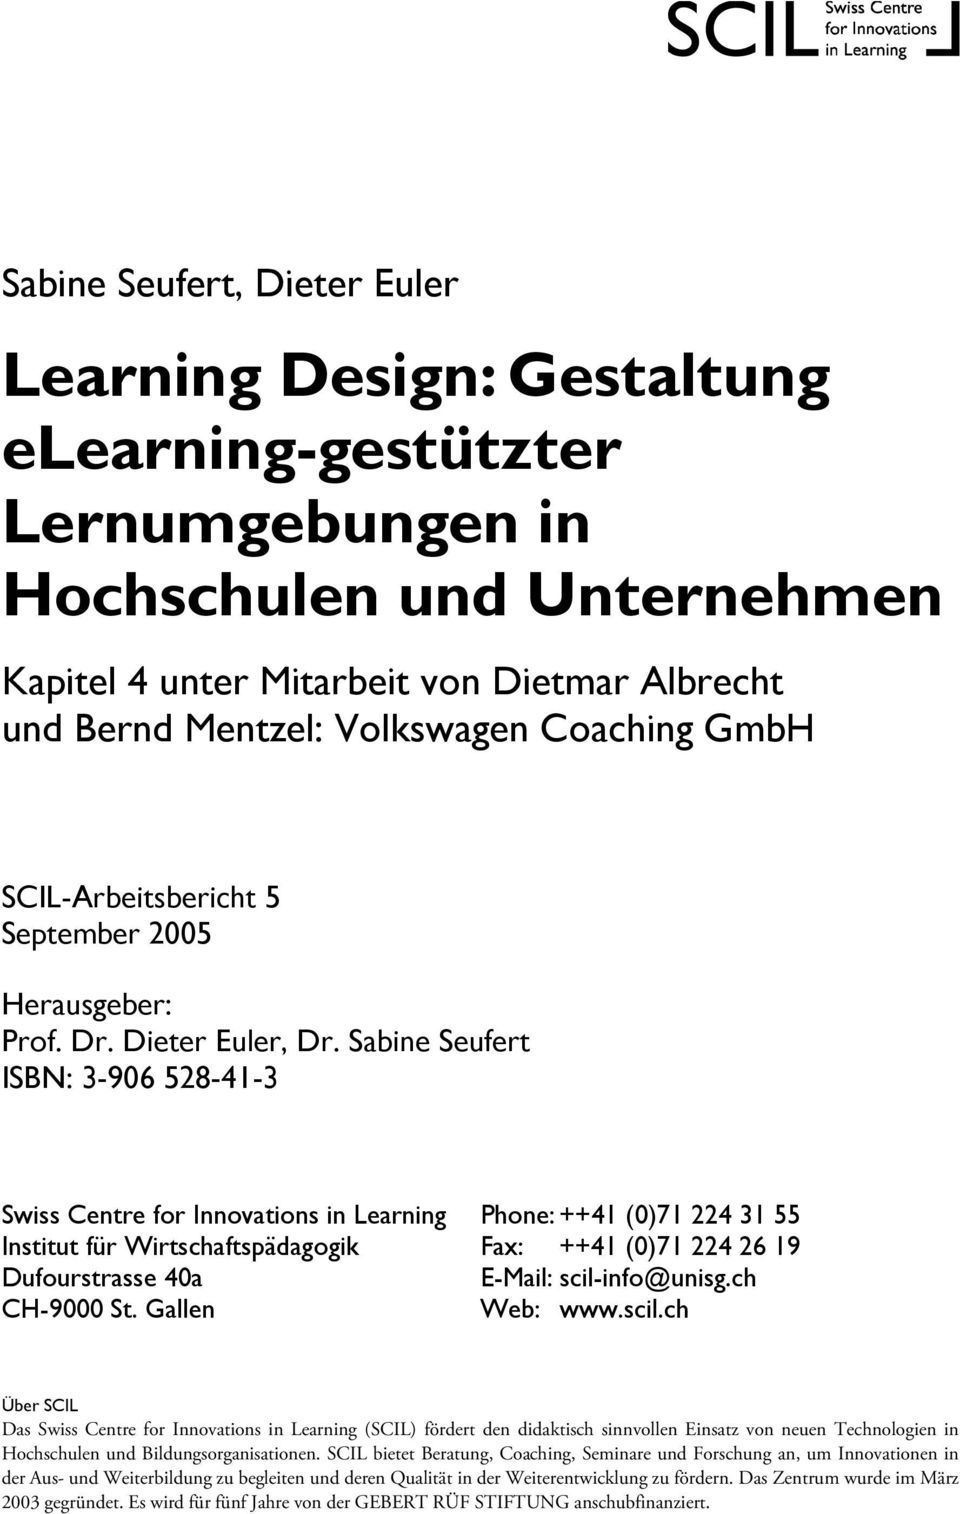 Sabine Seufert ISBN: 3-906 528-41-3 Swiss Centre for Innovations in Learning Phone: ++41 (0)71 224 31 55 Institut für Wirtschaftspädagogik Fax: ++41 (0)71 224 26 19 Dufourstrasse 40a E-Mail: